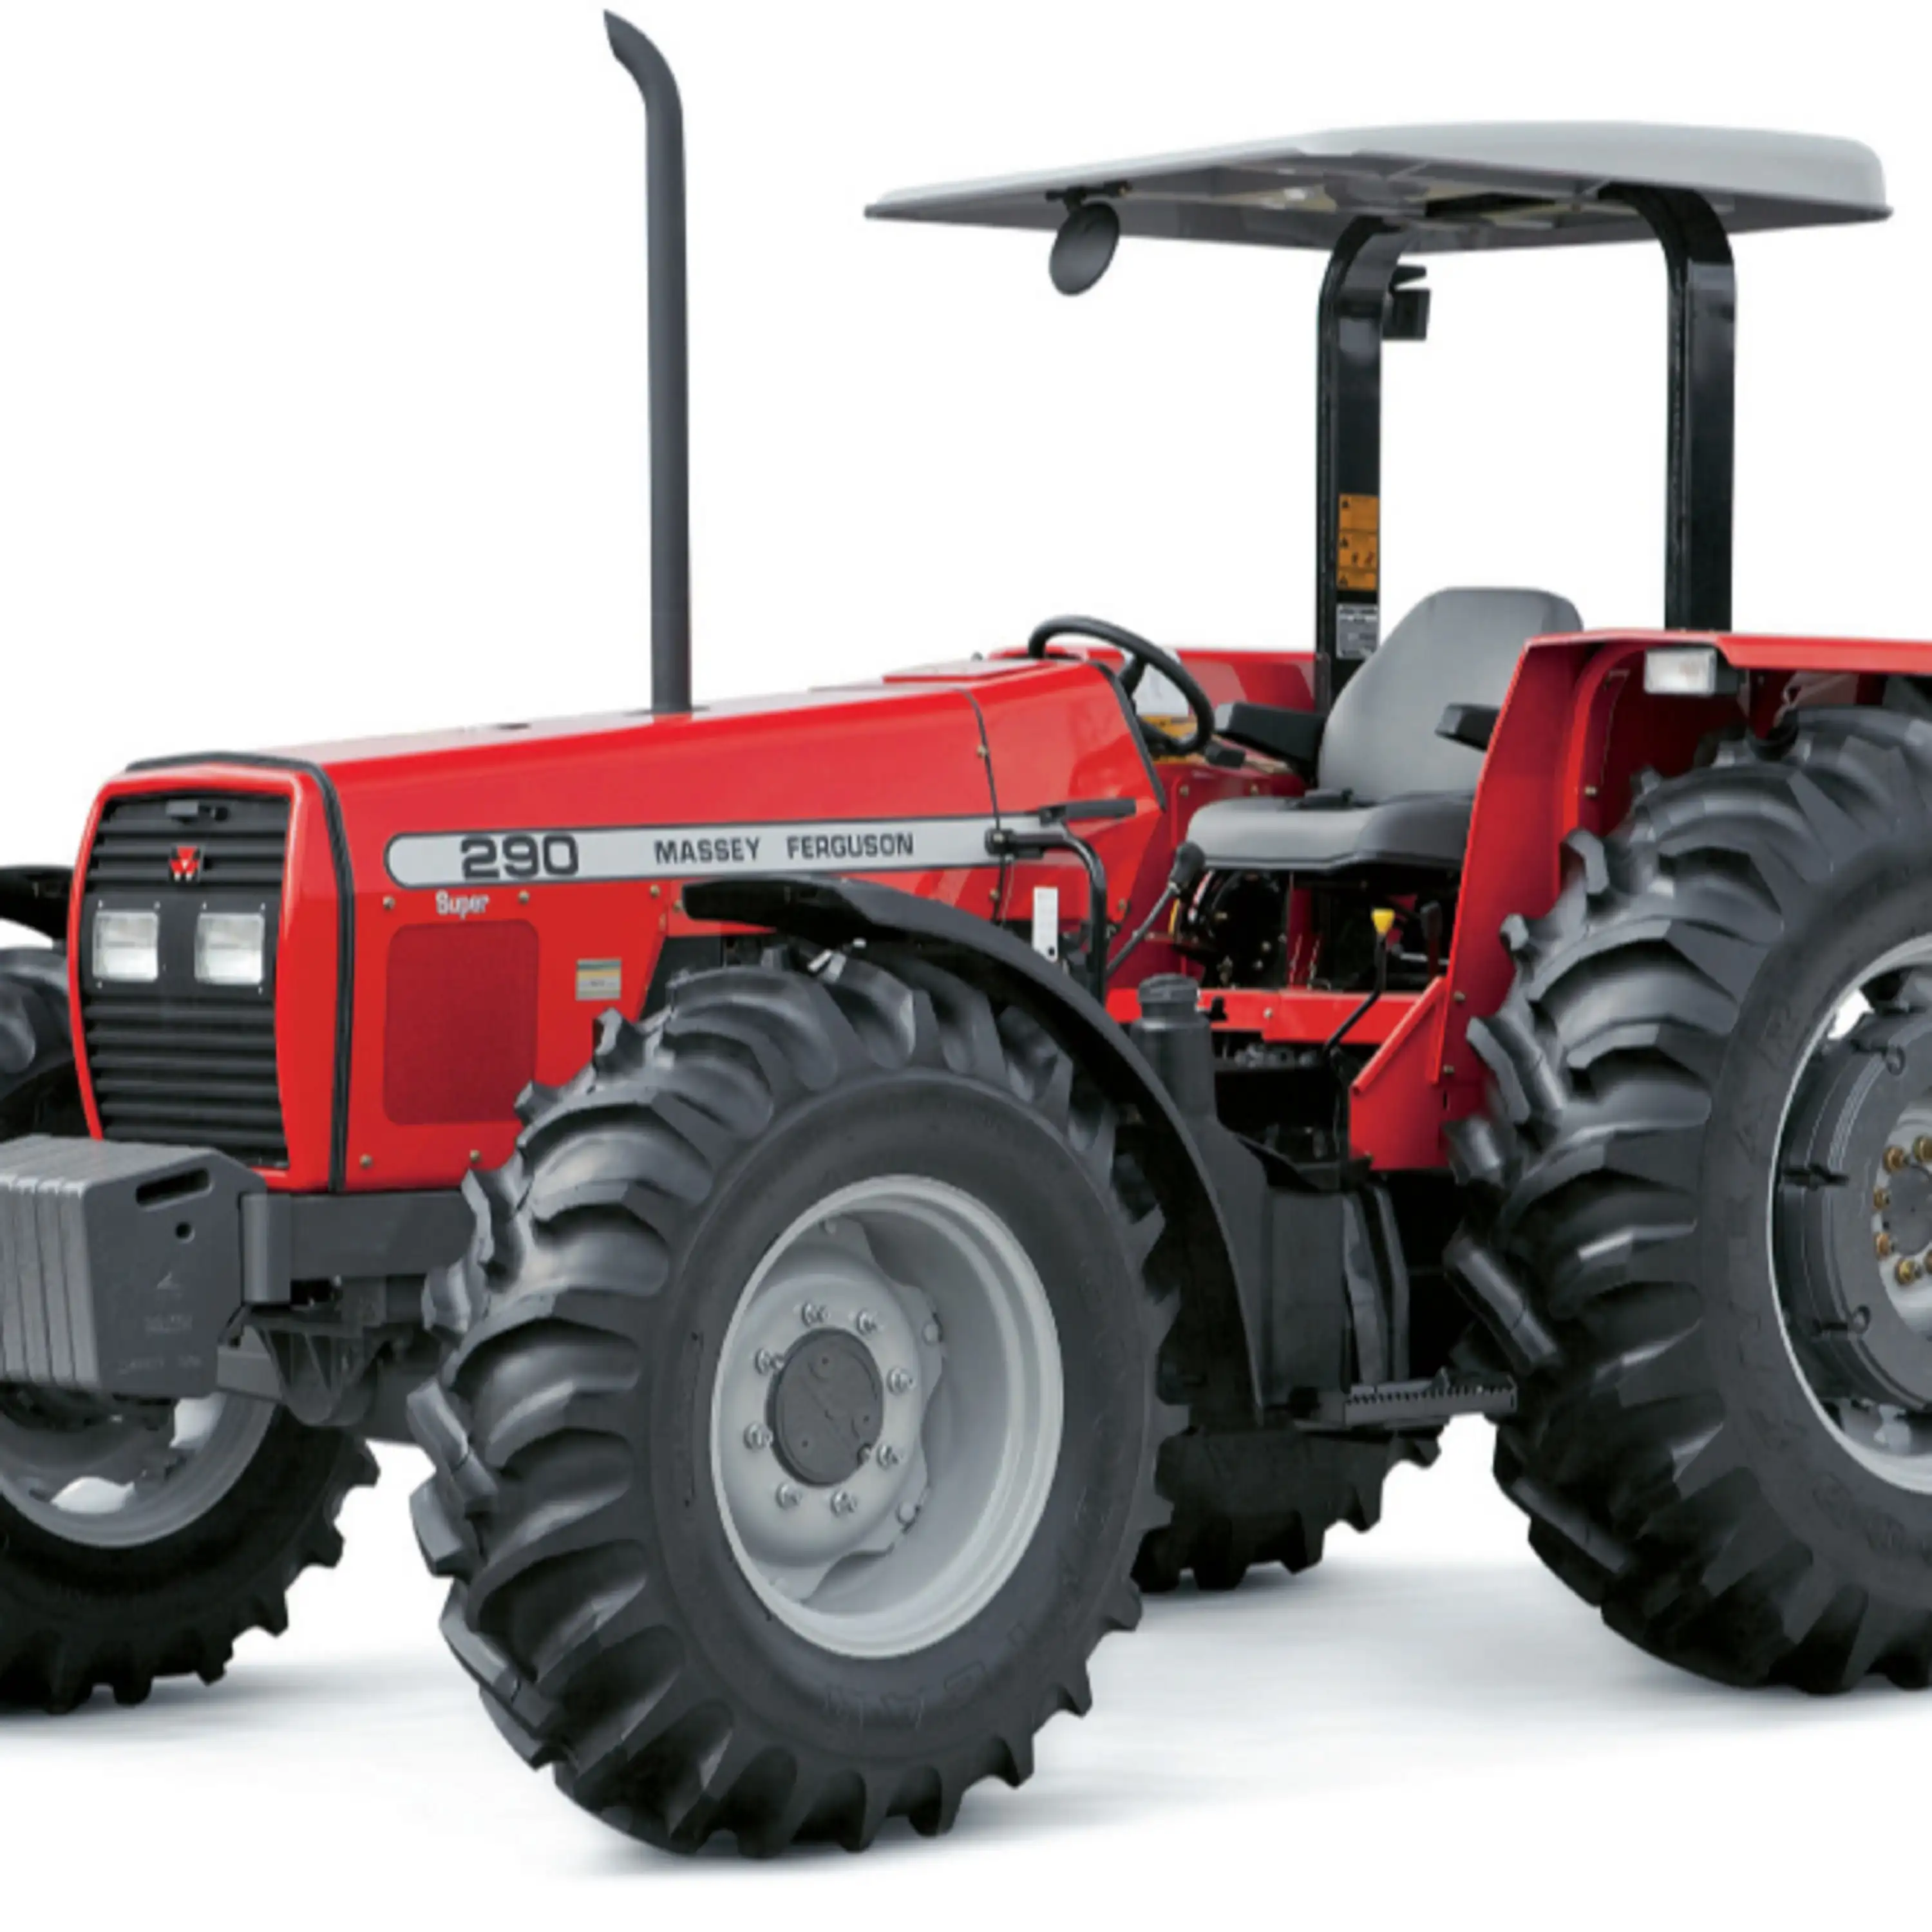 Traktor Pertanian MASSEY FERGUSON 290 4WD Yang Cukup Digunakan